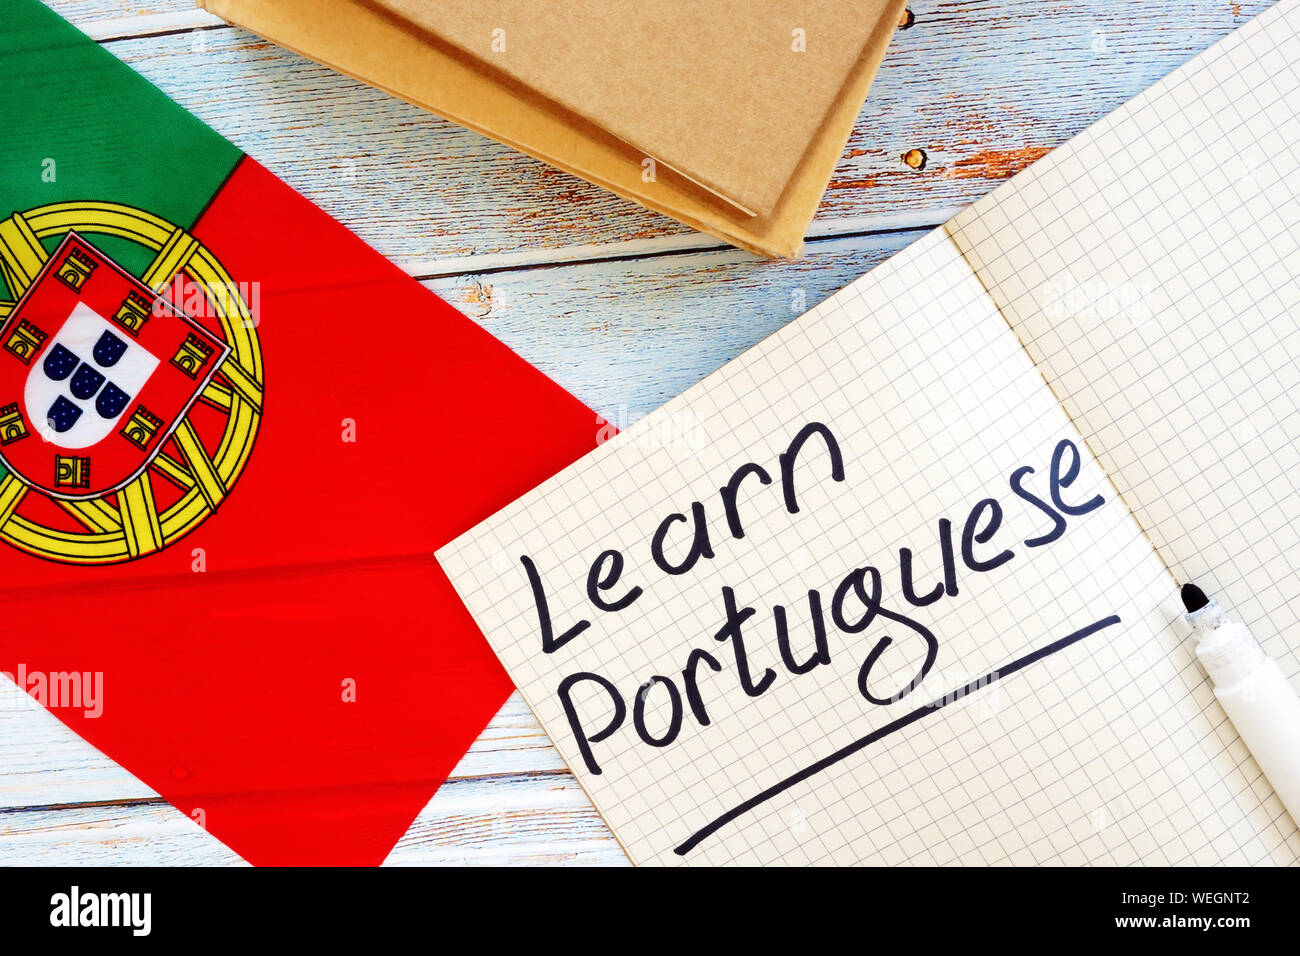 Aprender el concepto de lengua portuguesa. Bandera y portátiles. Foto de stock